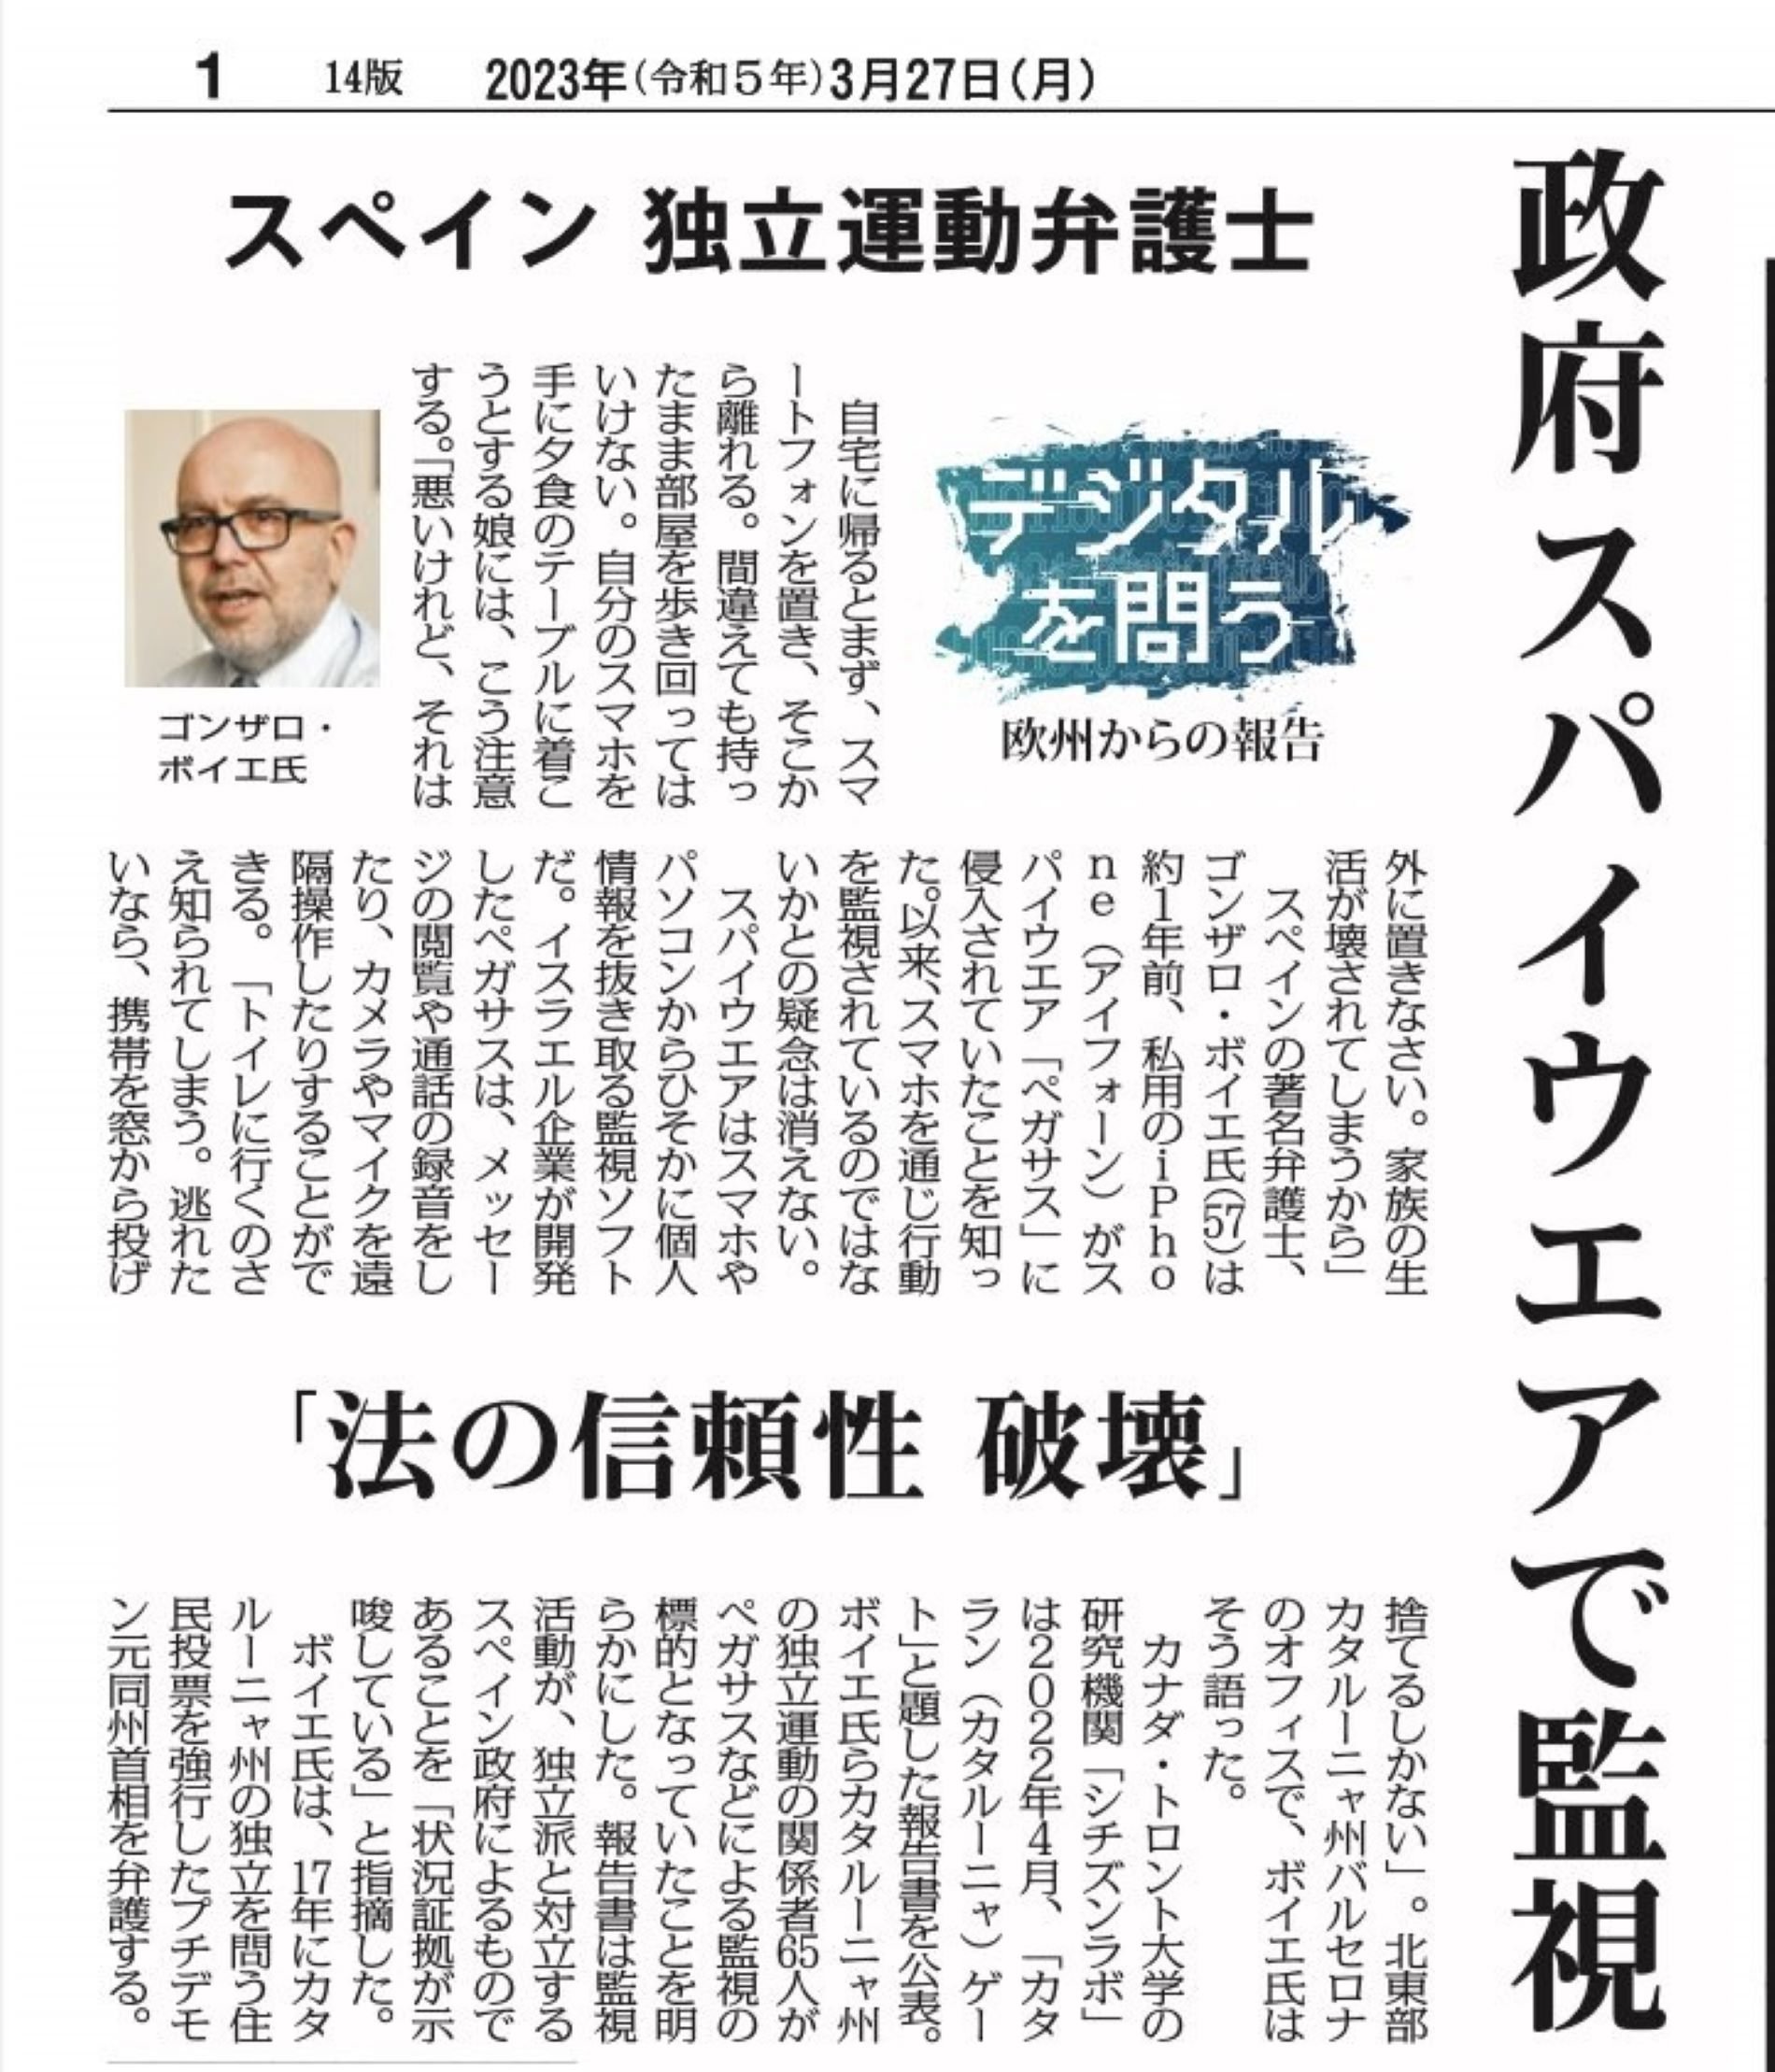 Un diario líder de Japón se hace cruces del Catalangate: "Sacrifica la seguridad nacional"